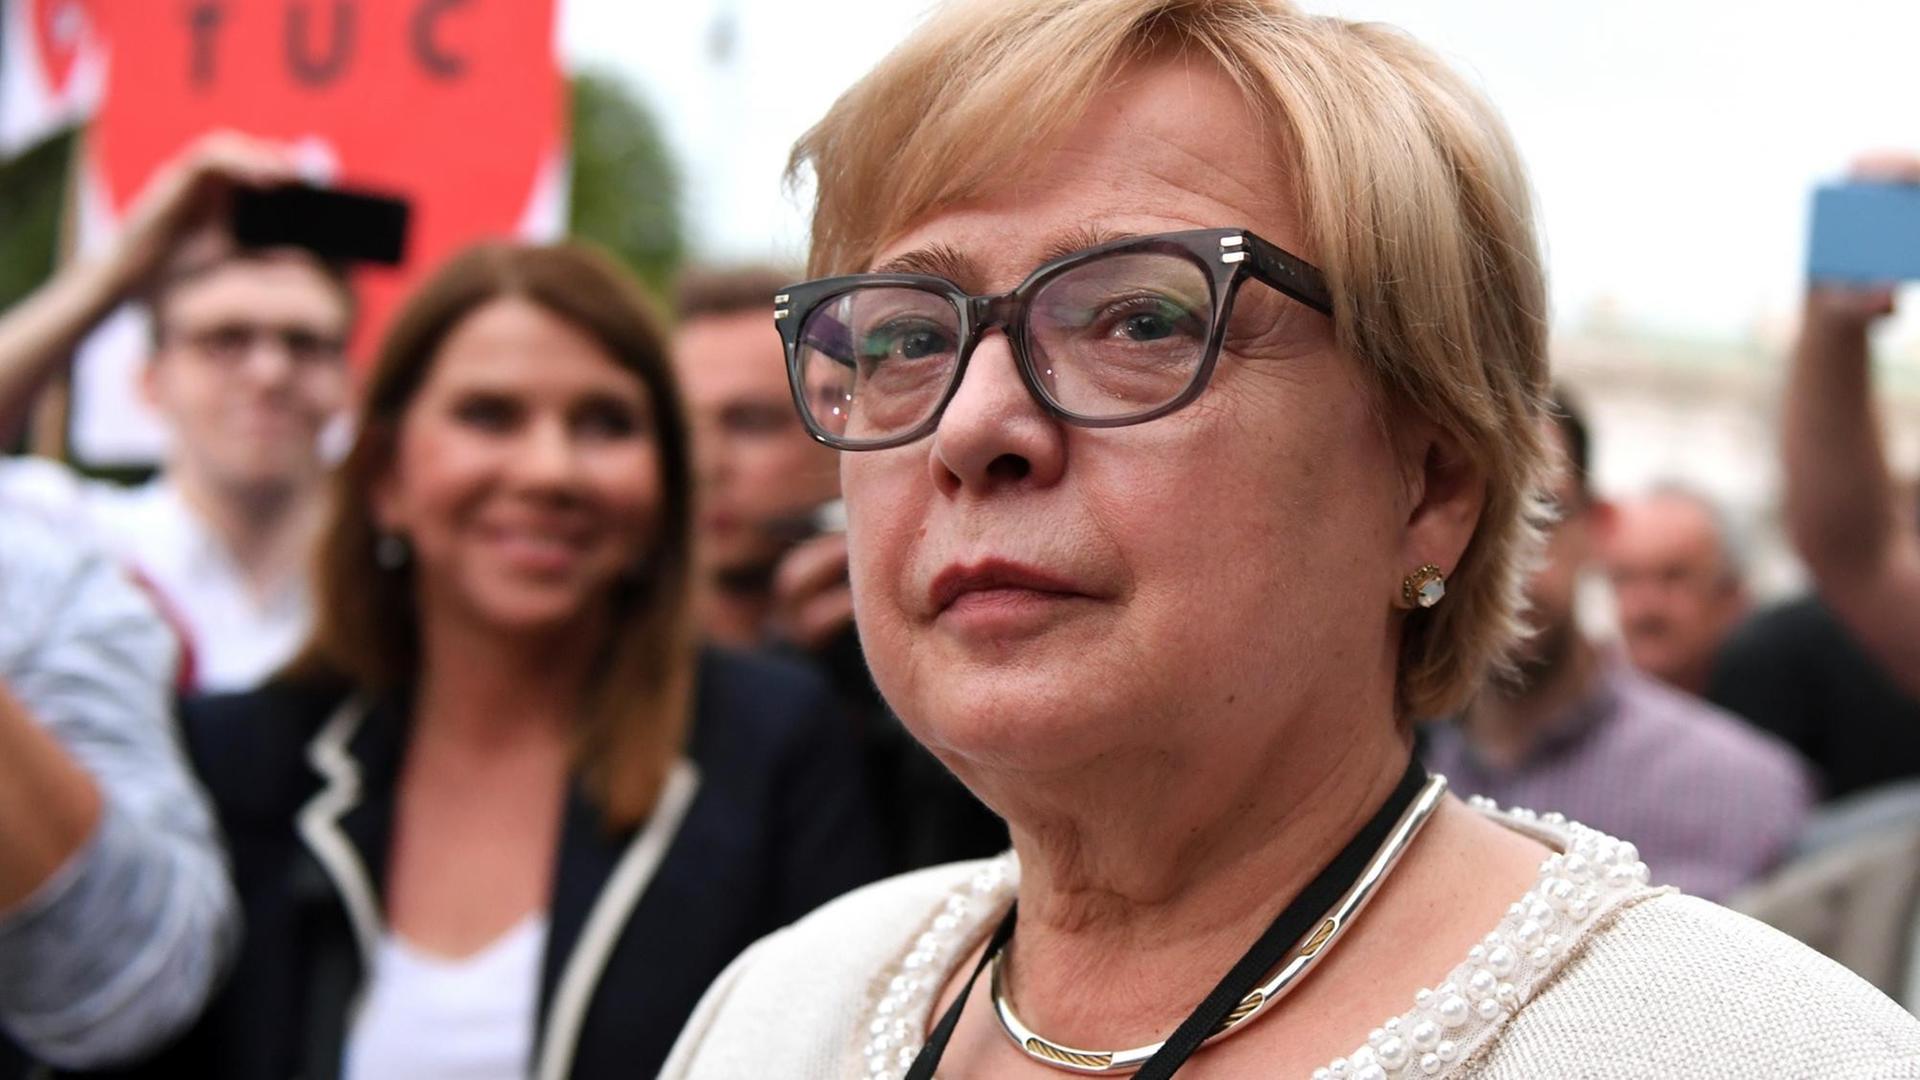 Die Präsidentin des Obersten Gerichtshofs von Polen, Gersdorf, beteiligt sich an Protesten gegen die Zwangspensionierung von Richtern